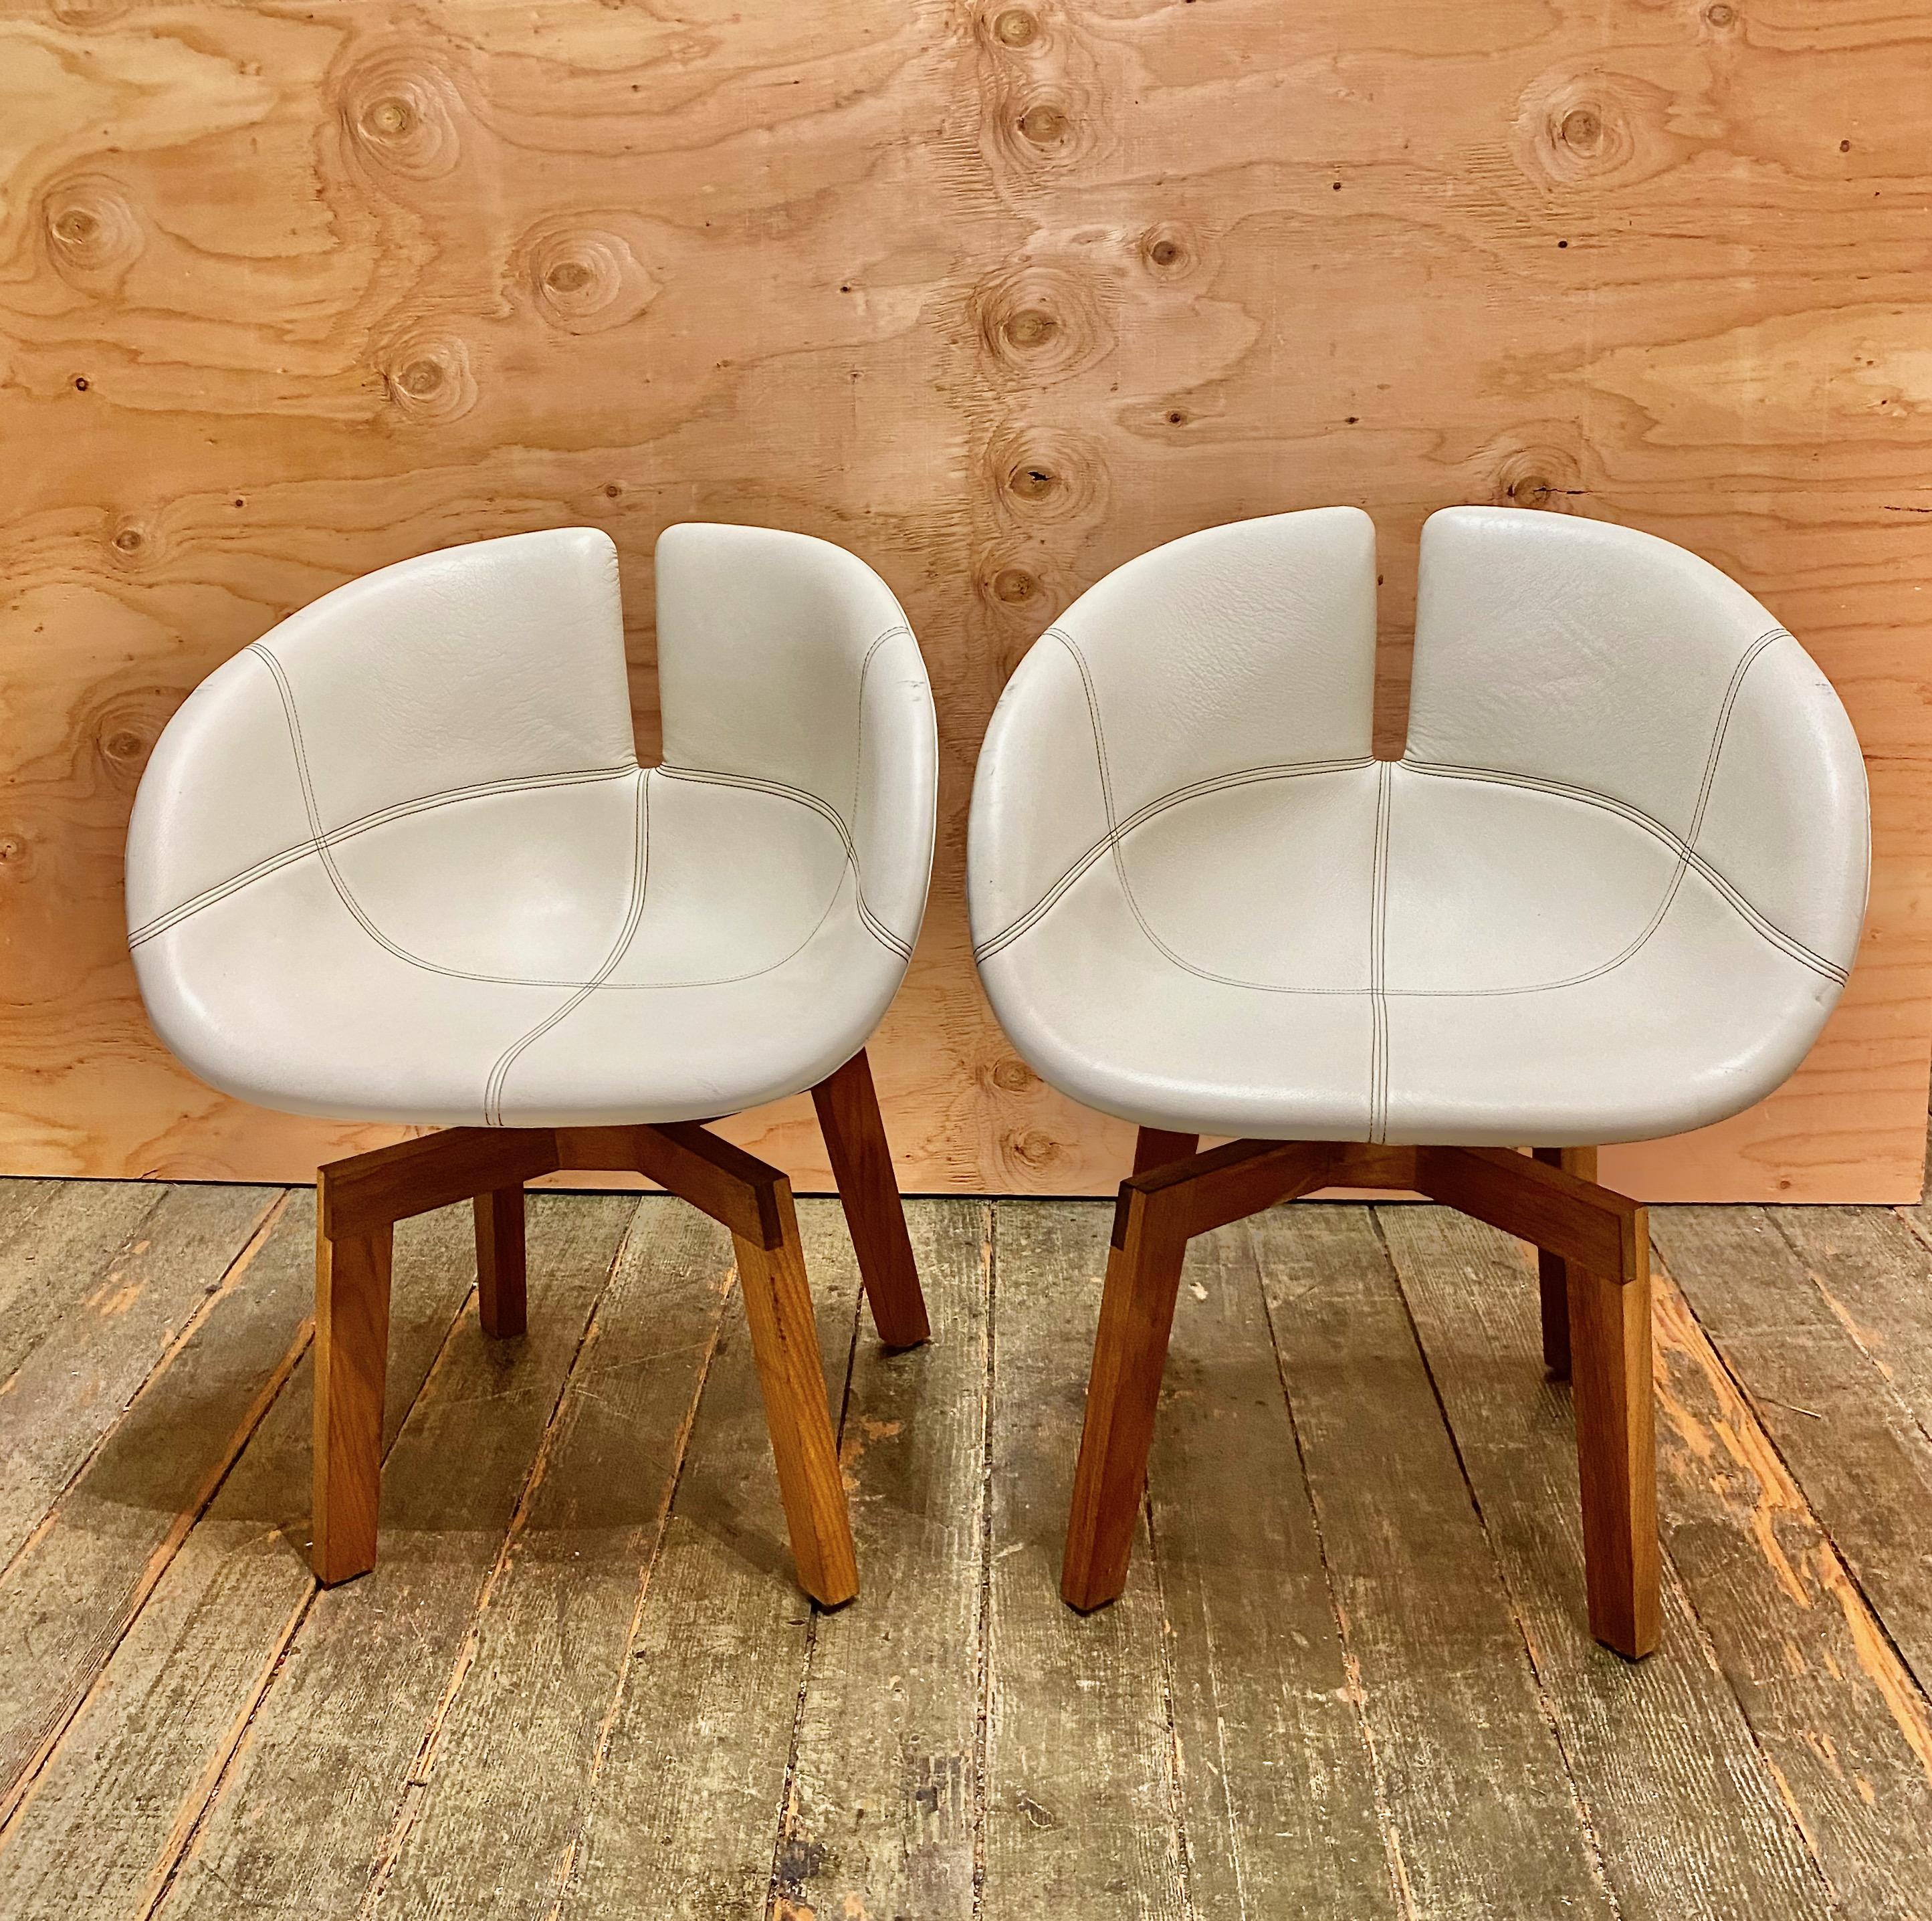 Ces chaises ont été fabriquées en Italie par l'usine reconnue Moroso d'après les dessins de la célèbre designer espagnole Patricia Urquiola. Ces exemples particuliers appartiennent au niveau supérieur de ce modèle et sont fabriqués avec du cuir